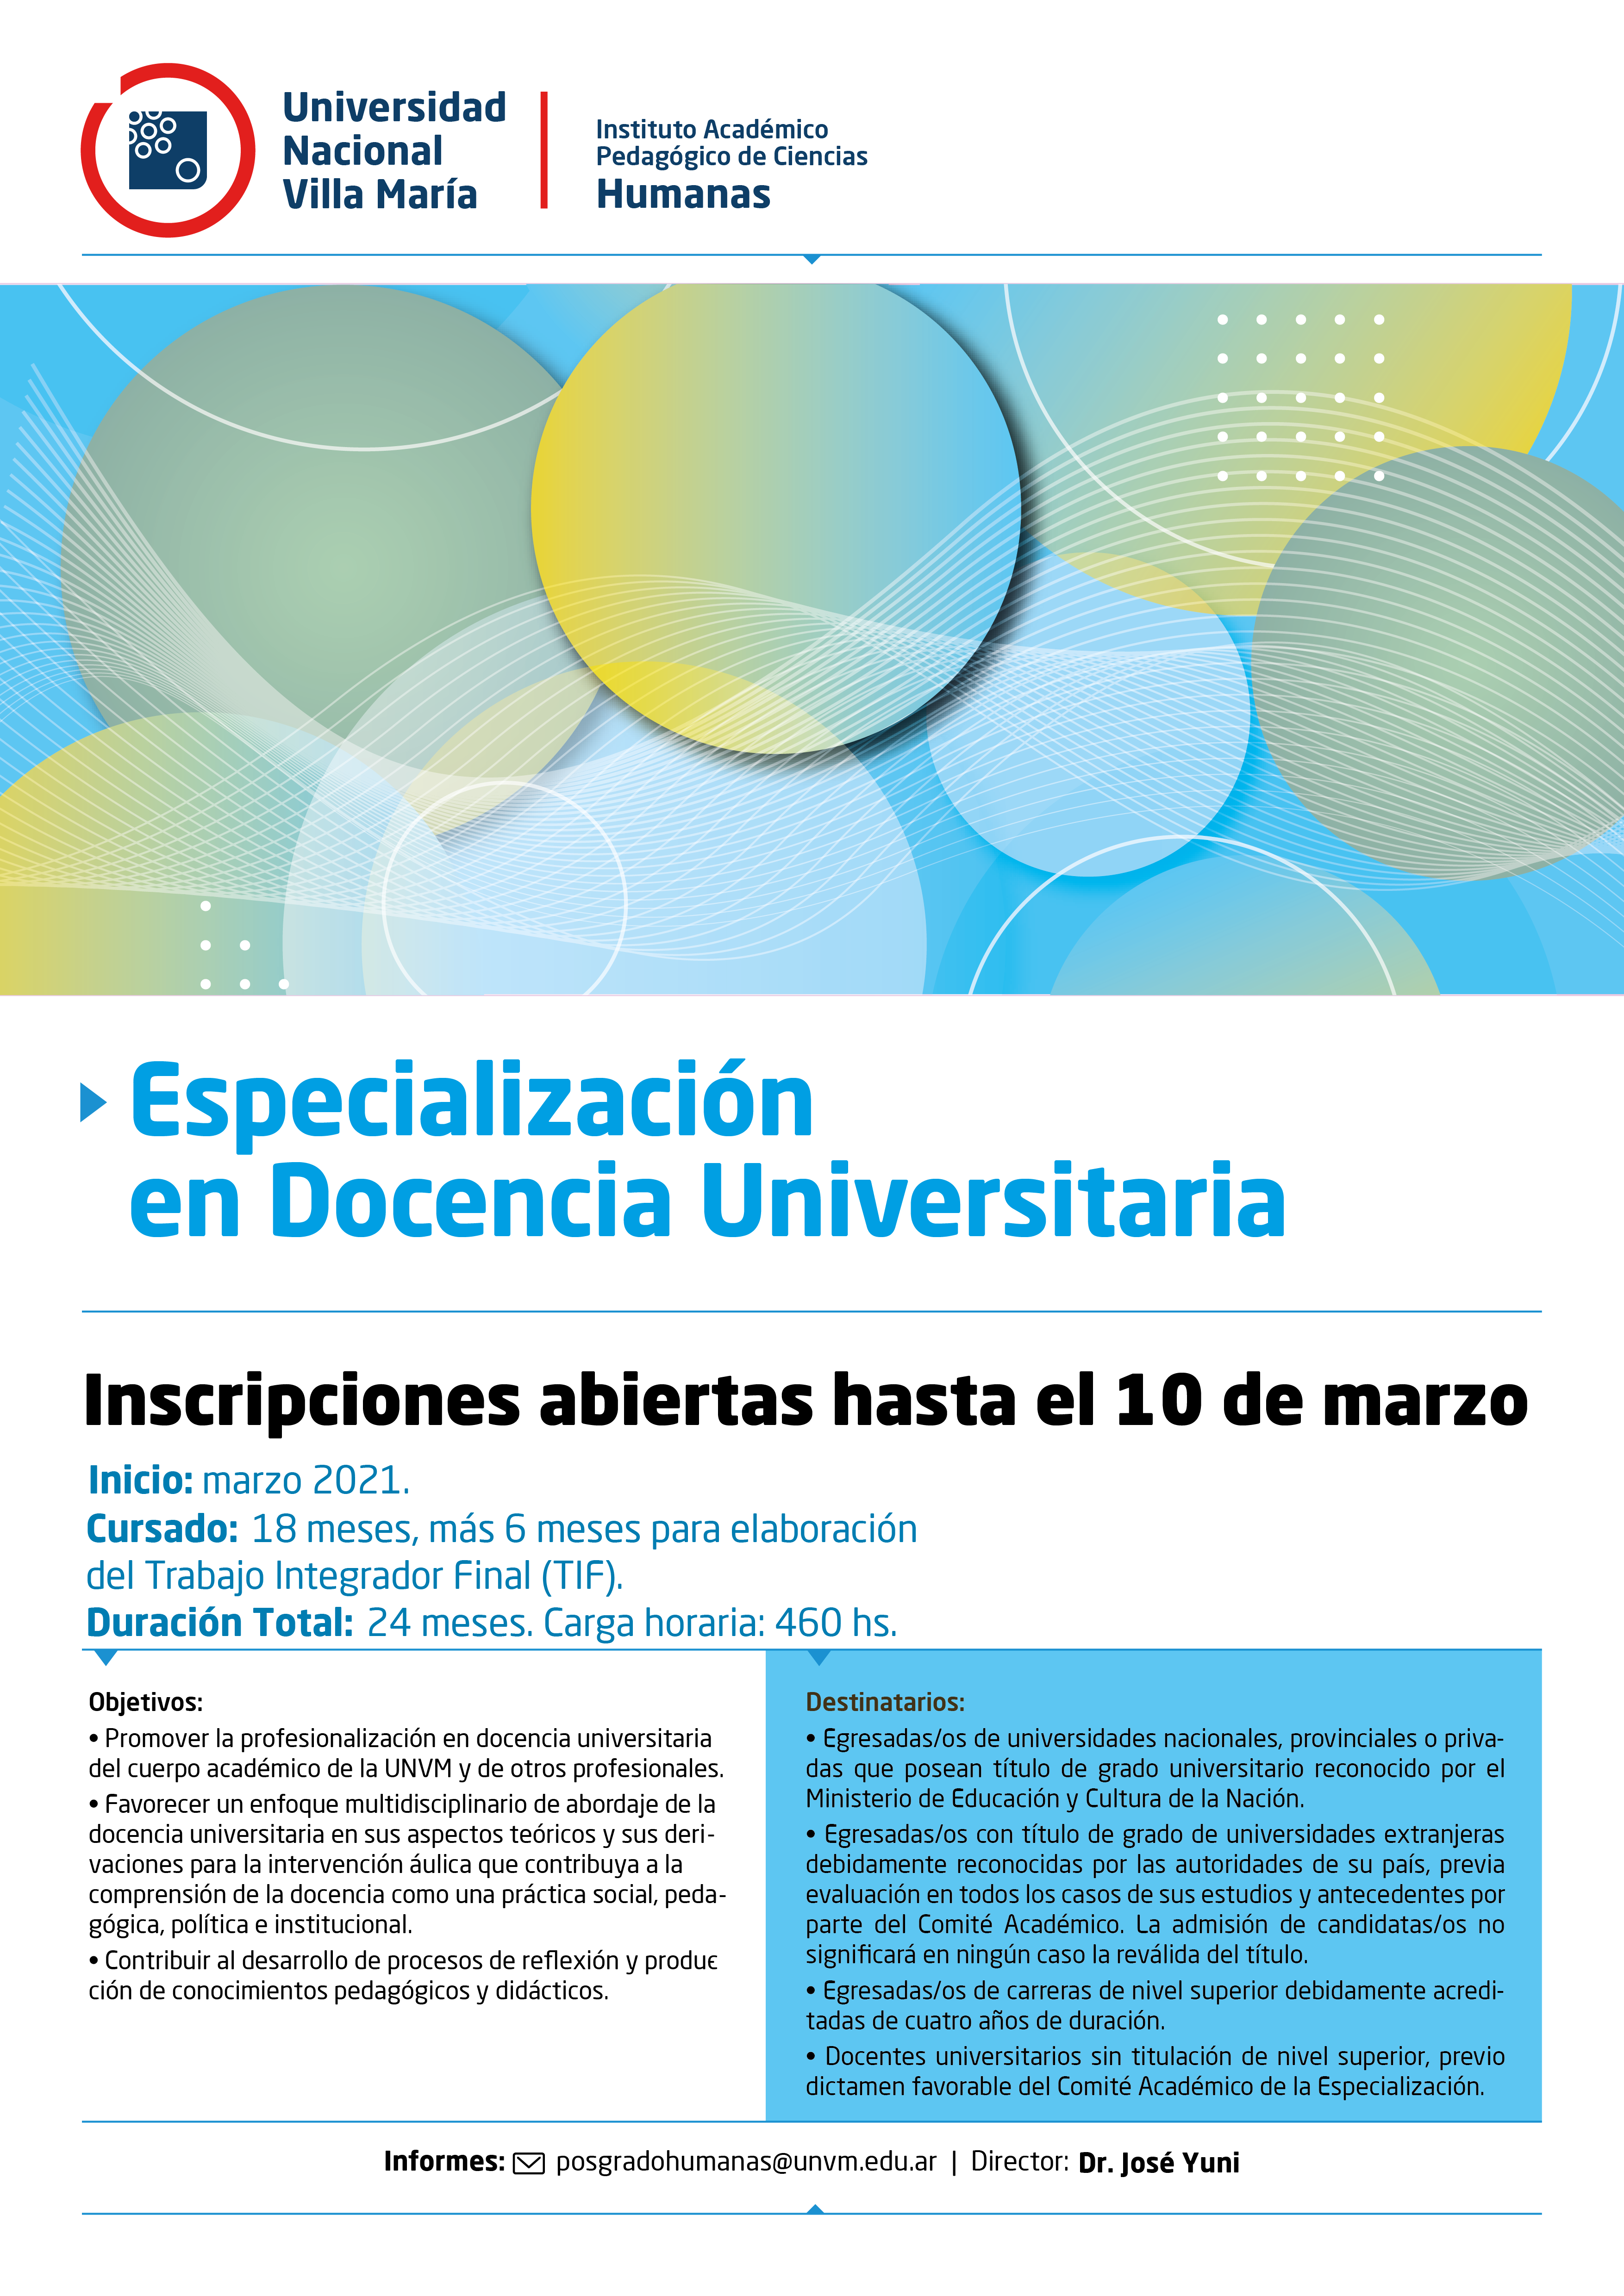 Inscripciones abiertas para el Posgrado de Especialización en Docencia Universitaria